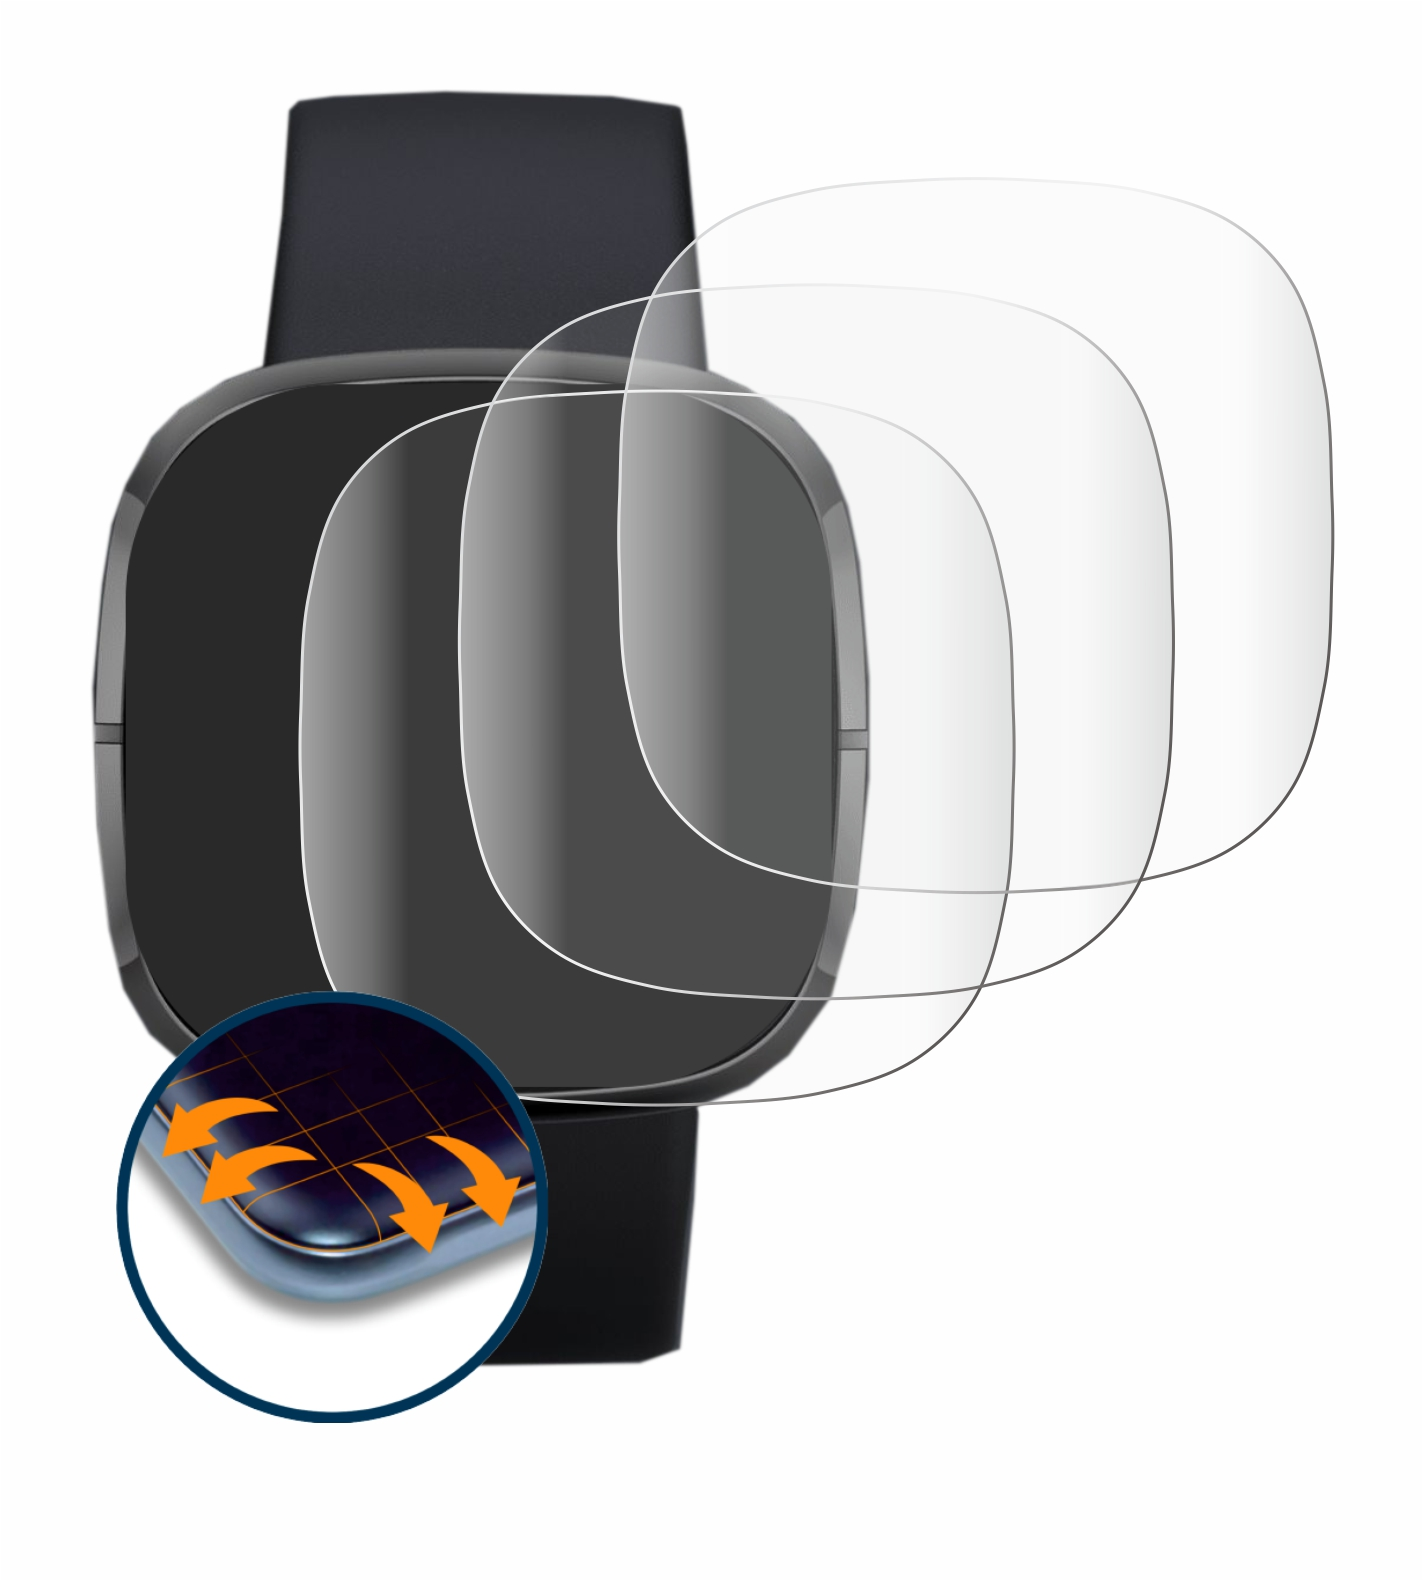 SAVVIES 4x Flex Full-Cover Fitbit Schutzfolie(für 3D Curved Sense)